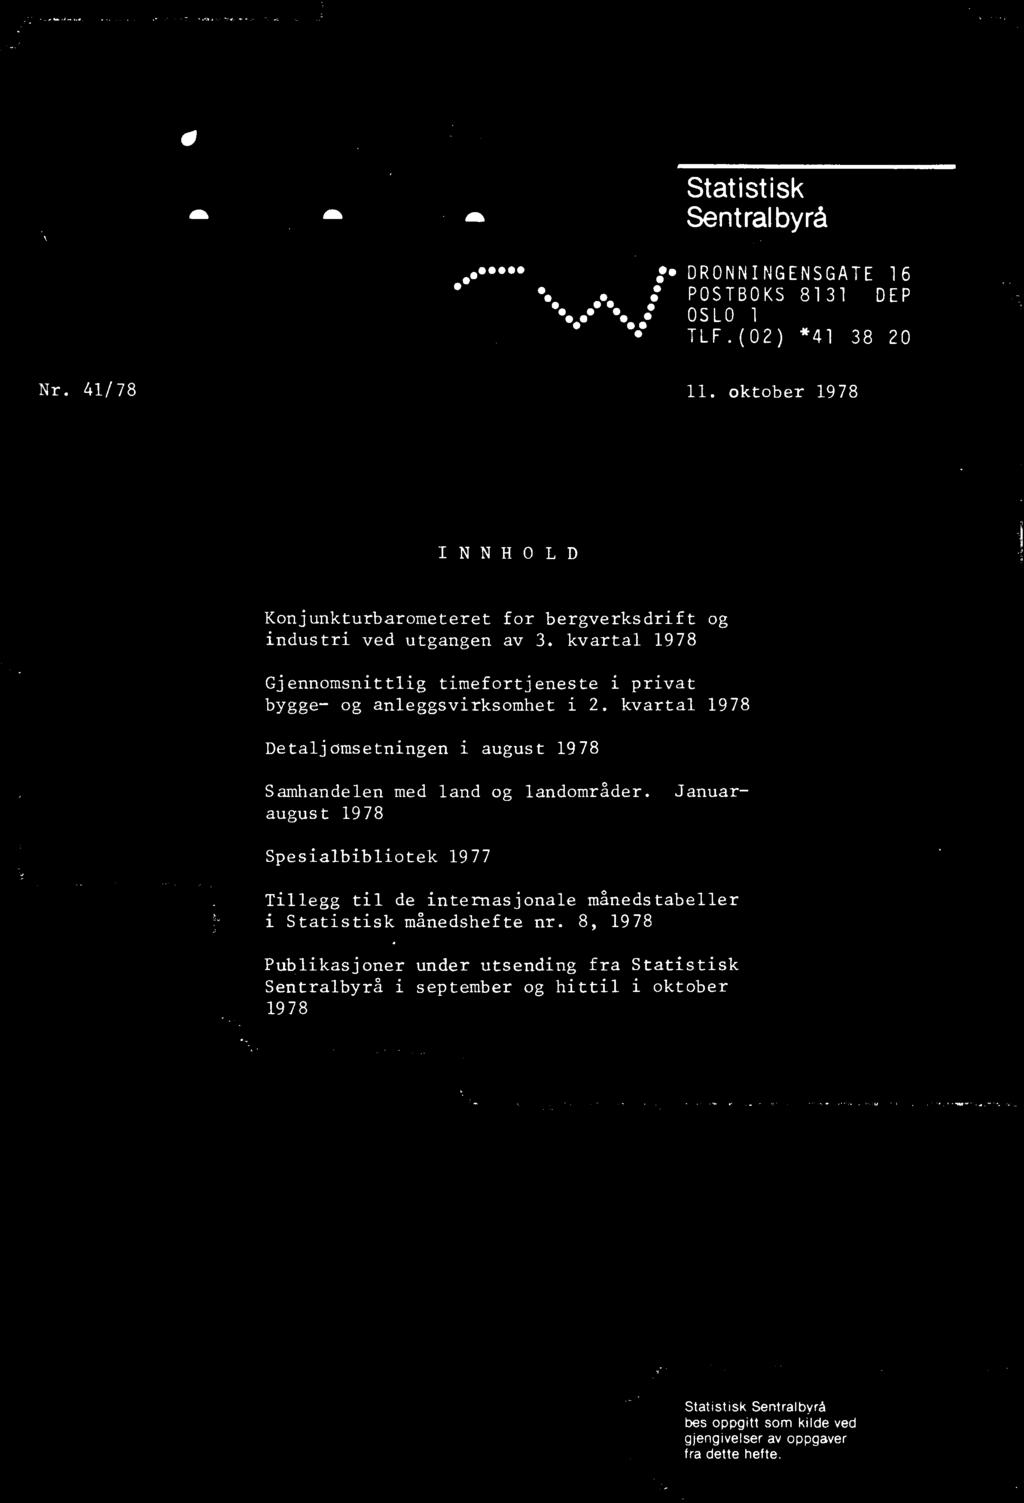 Januaraugust 1978 Spesialbibliotek 1977 Tillegg til de internasjonale månedstabeller i Statistisk